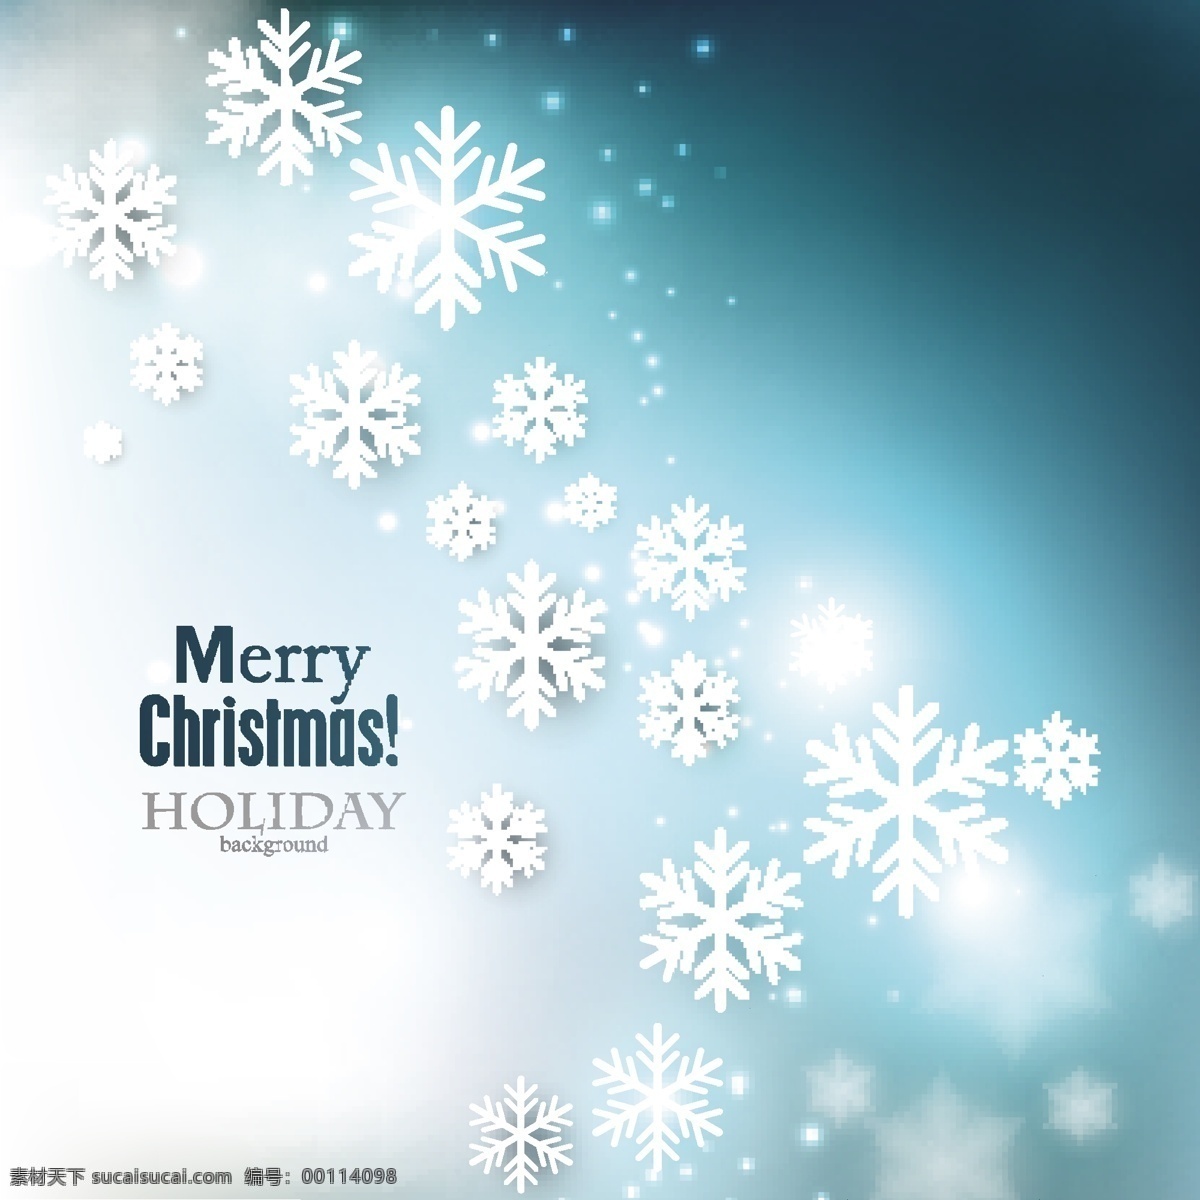 蓝色圣诞背景 有闪亮的雪花 摘要背景壁纸 庆典和聚会 圣诞节 节日和季节 模板和模型